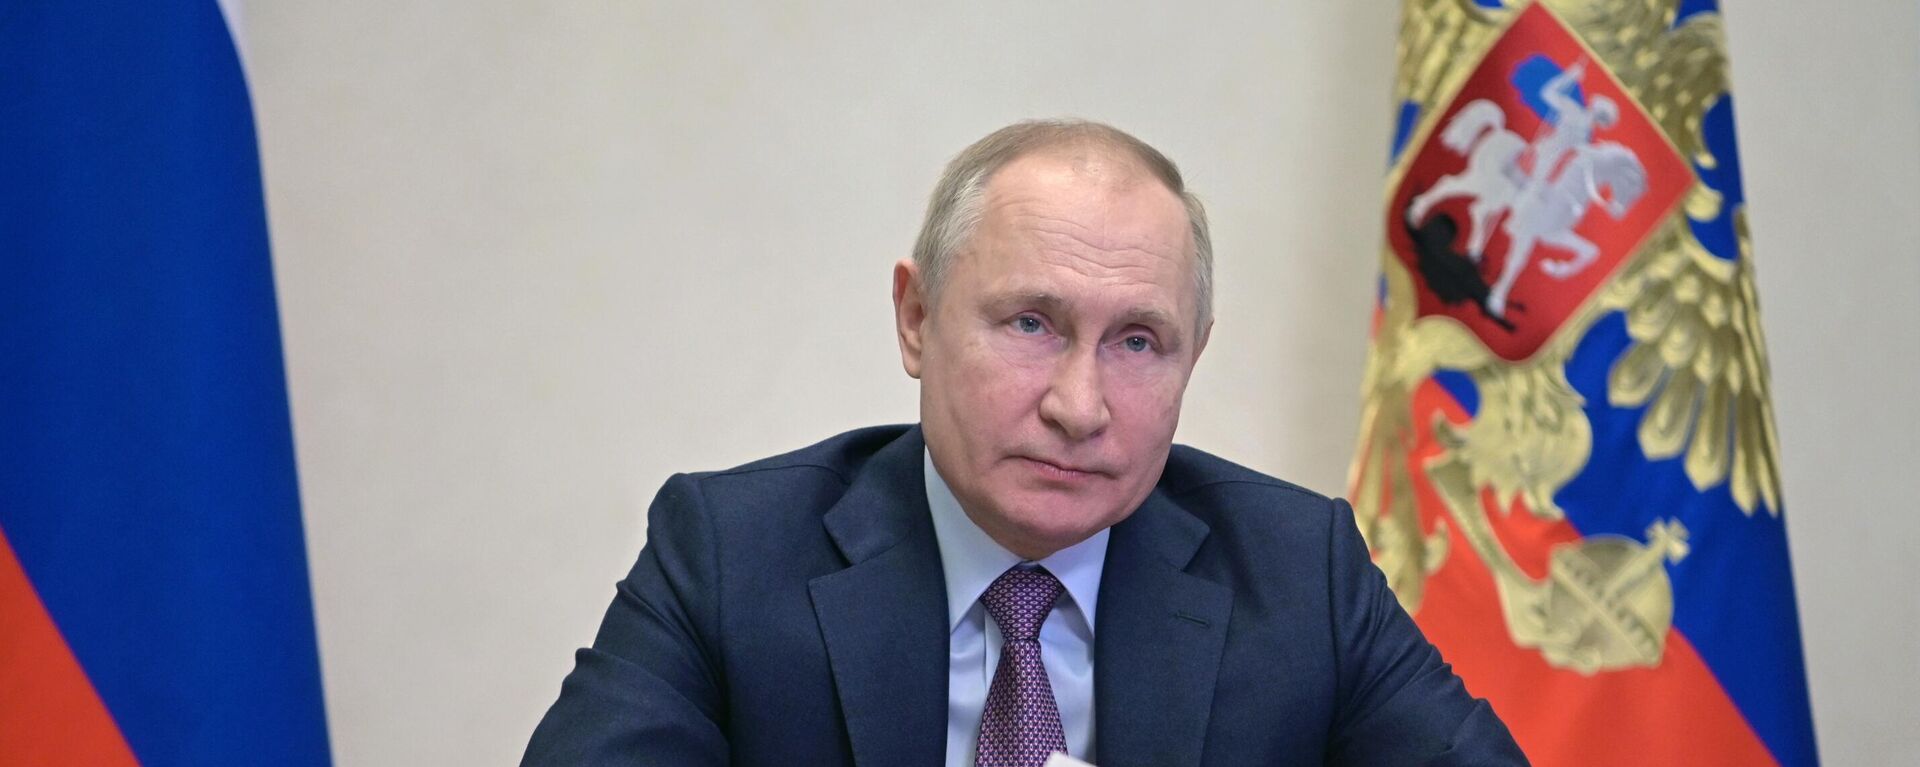 El presidente de Rusia, Vladímir Putin - Sputnik Mundo, 1920, 26.12.2021